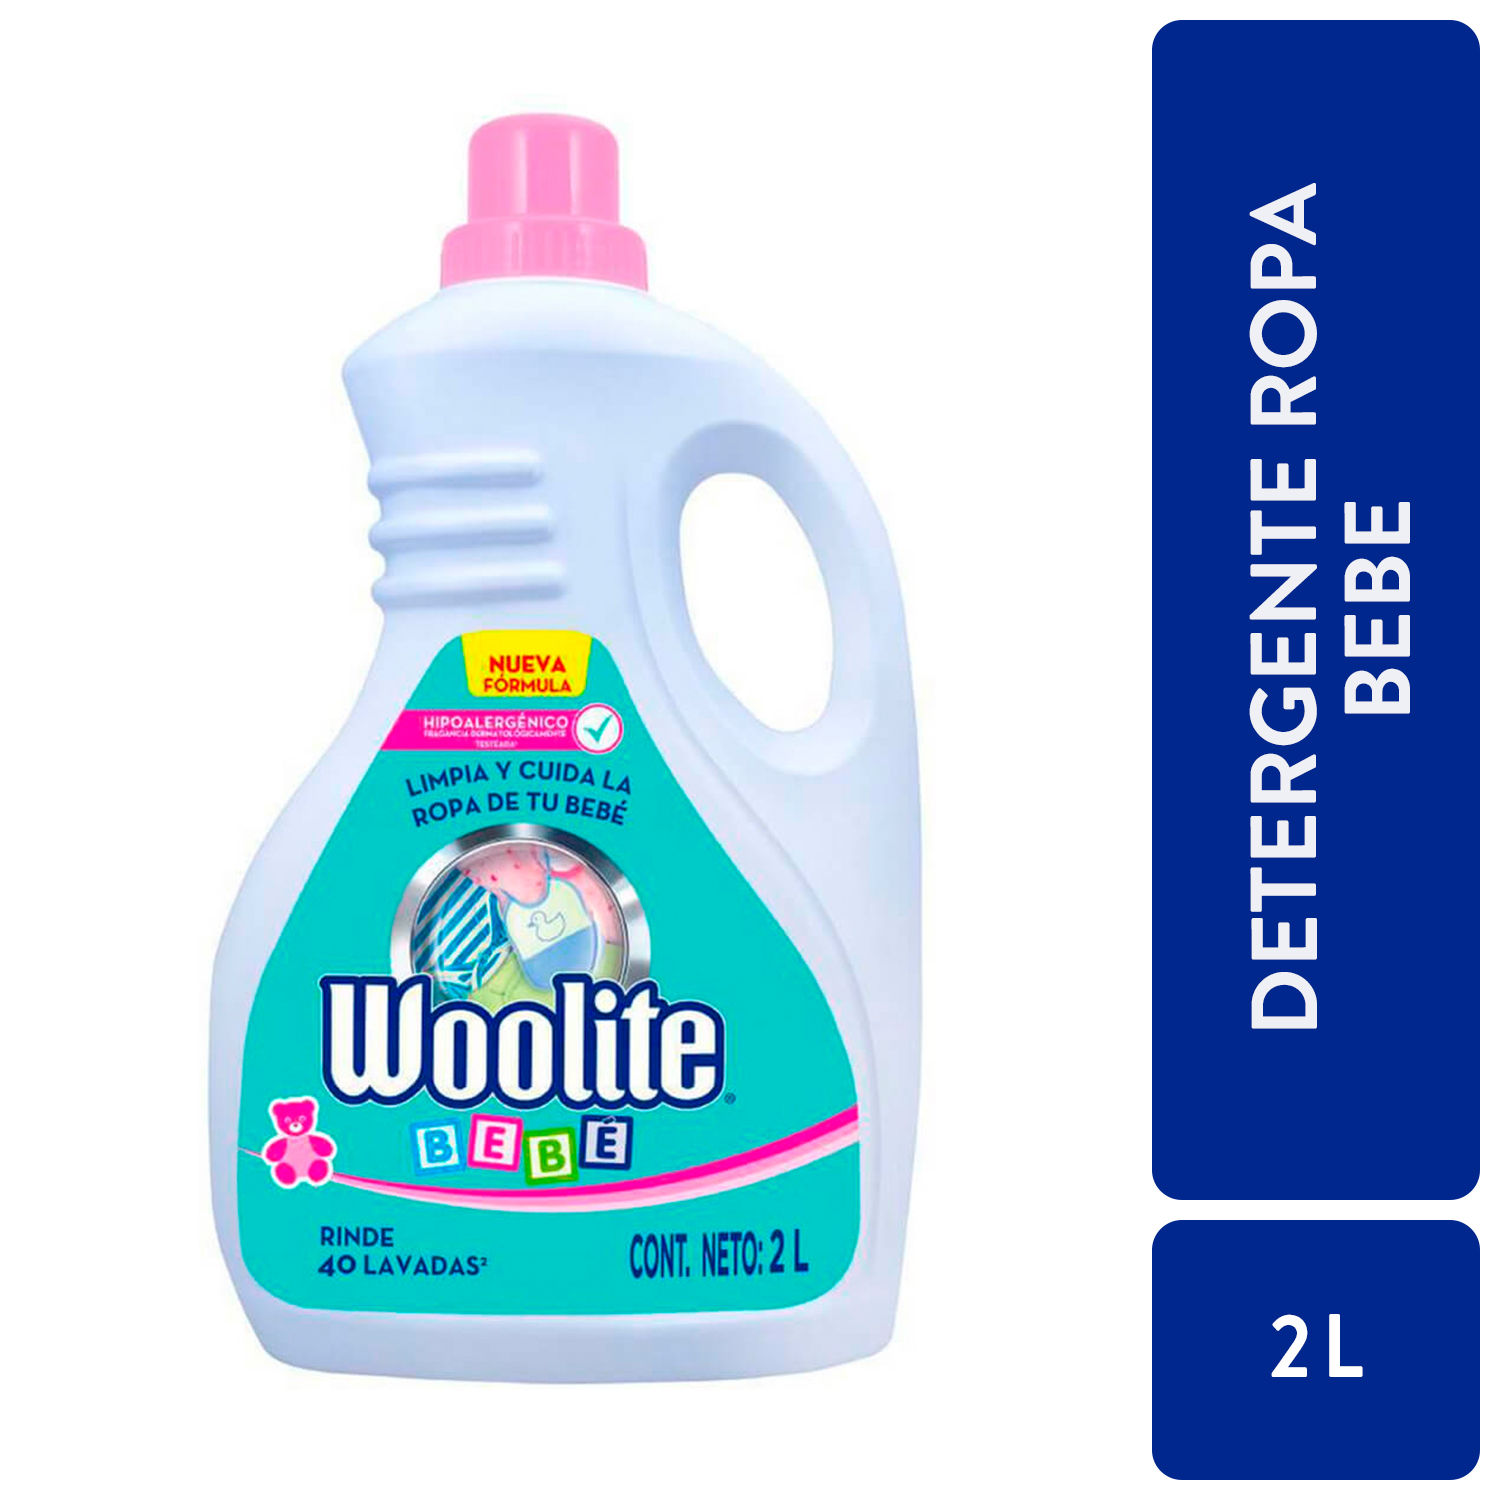 Woolite Baby, Detergente Líquido para Bebé Hipoalergénico, 2 LT -  Superunico - El Supermercado 100% Online de Panamá